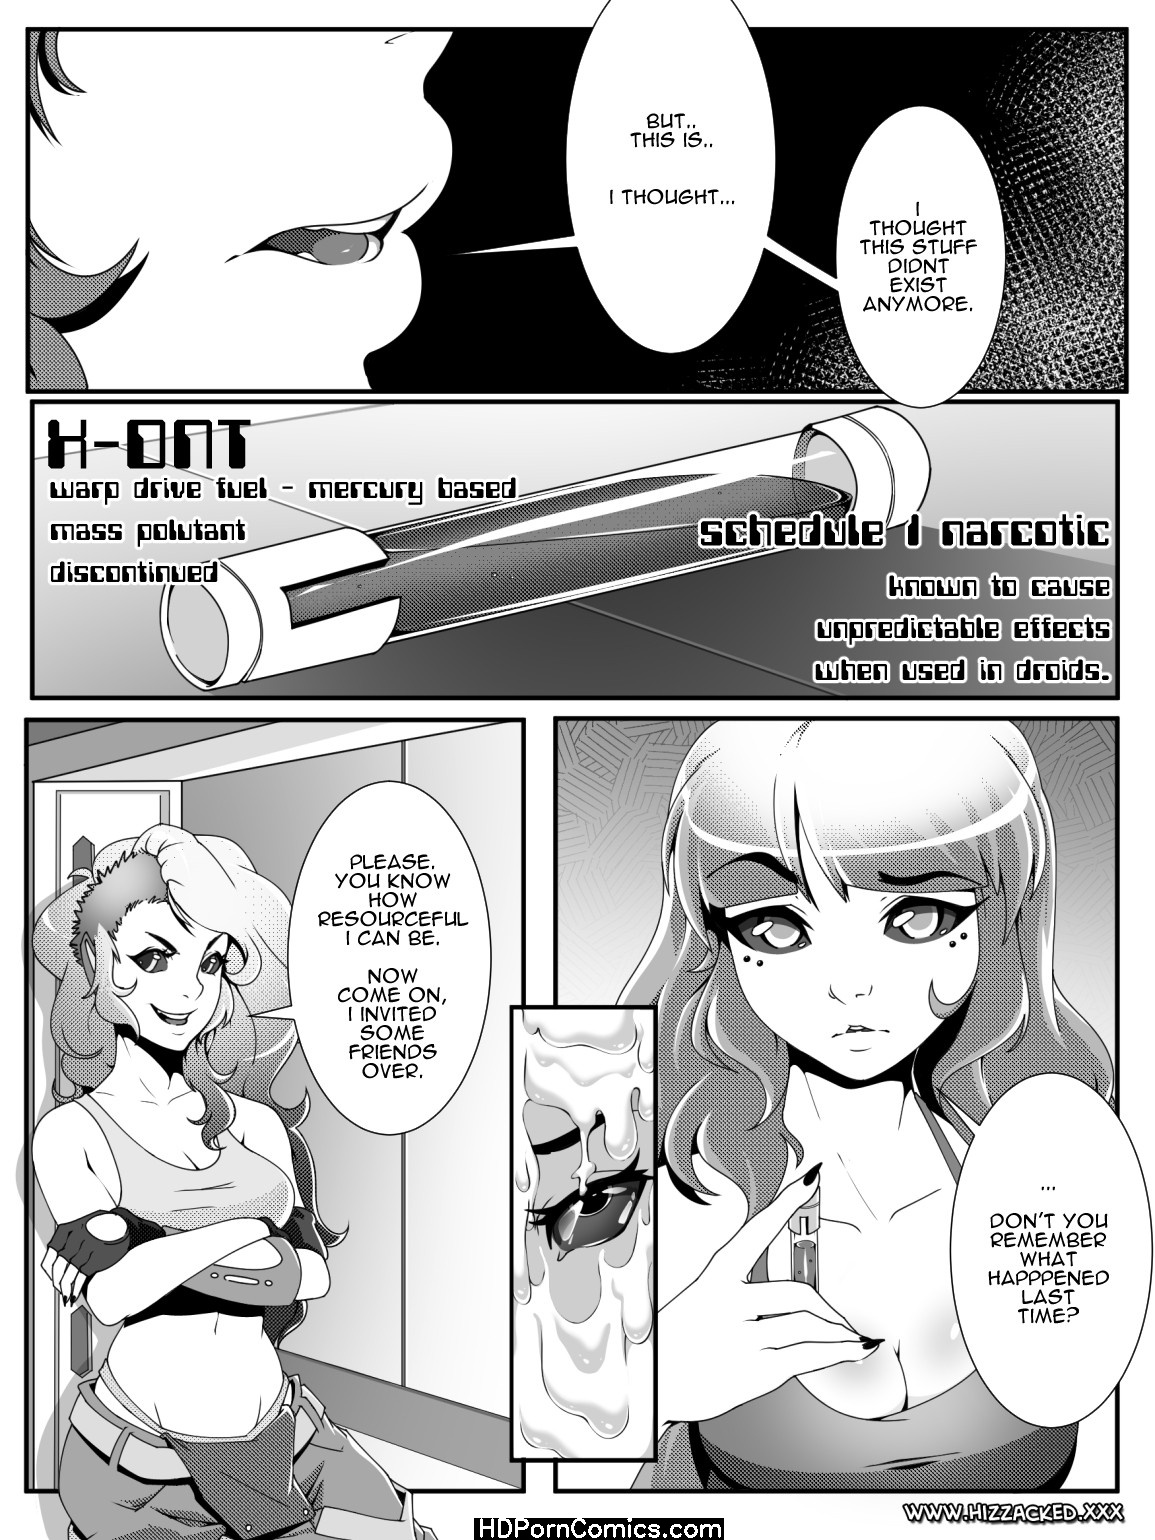 1155px x 1540px - Binary Gangbang Sex Comic - HD Porn Comix